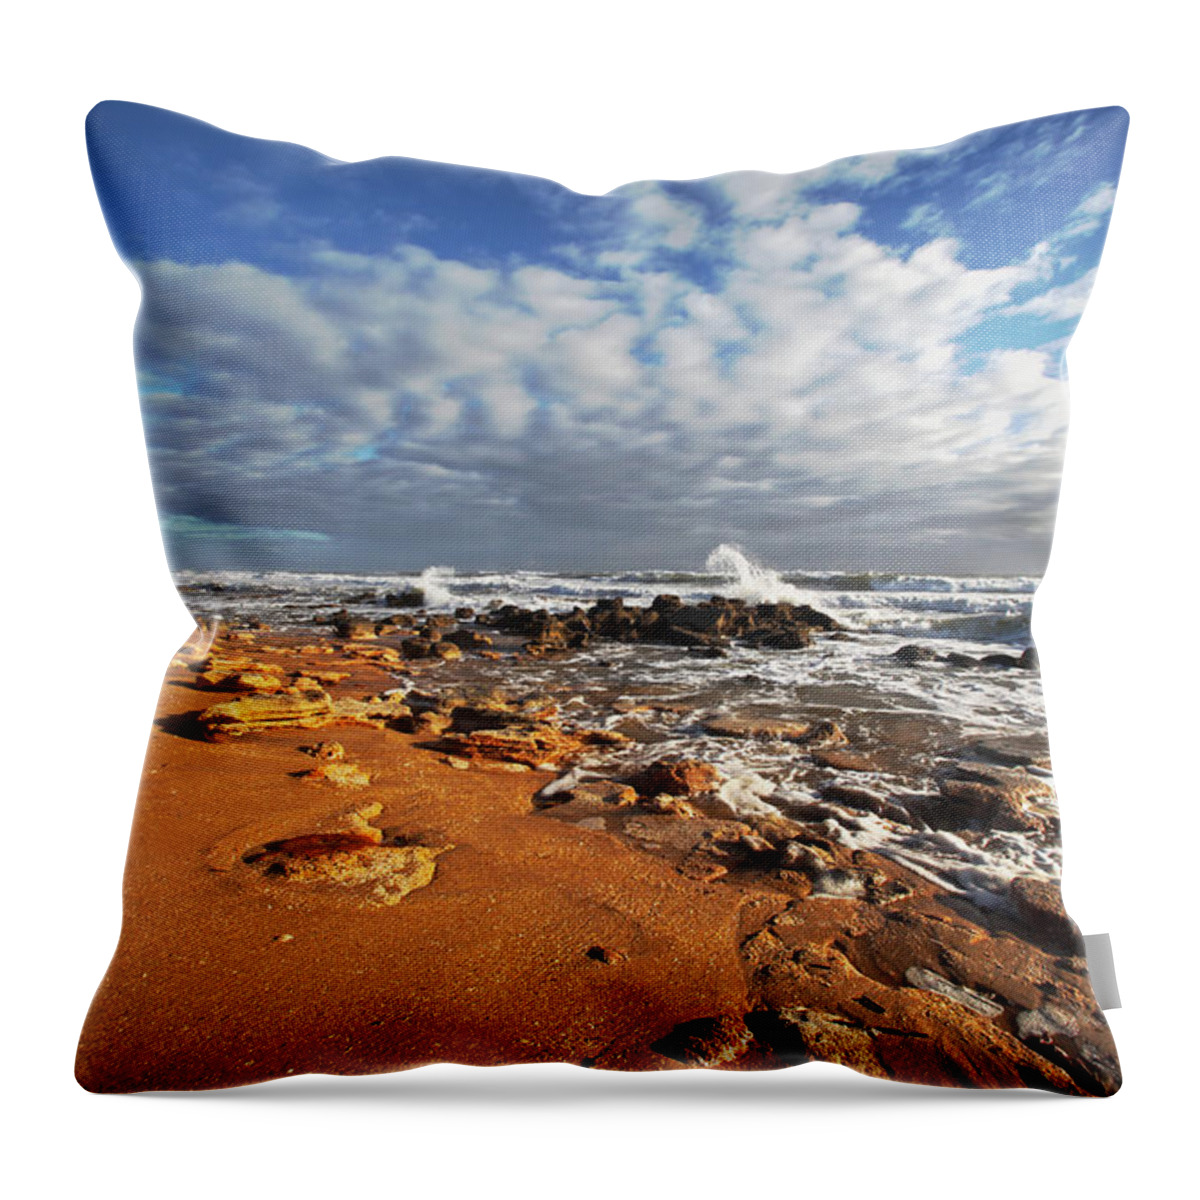 Sun Throw Pillow featuring the photograph Ocean View by Robert Och